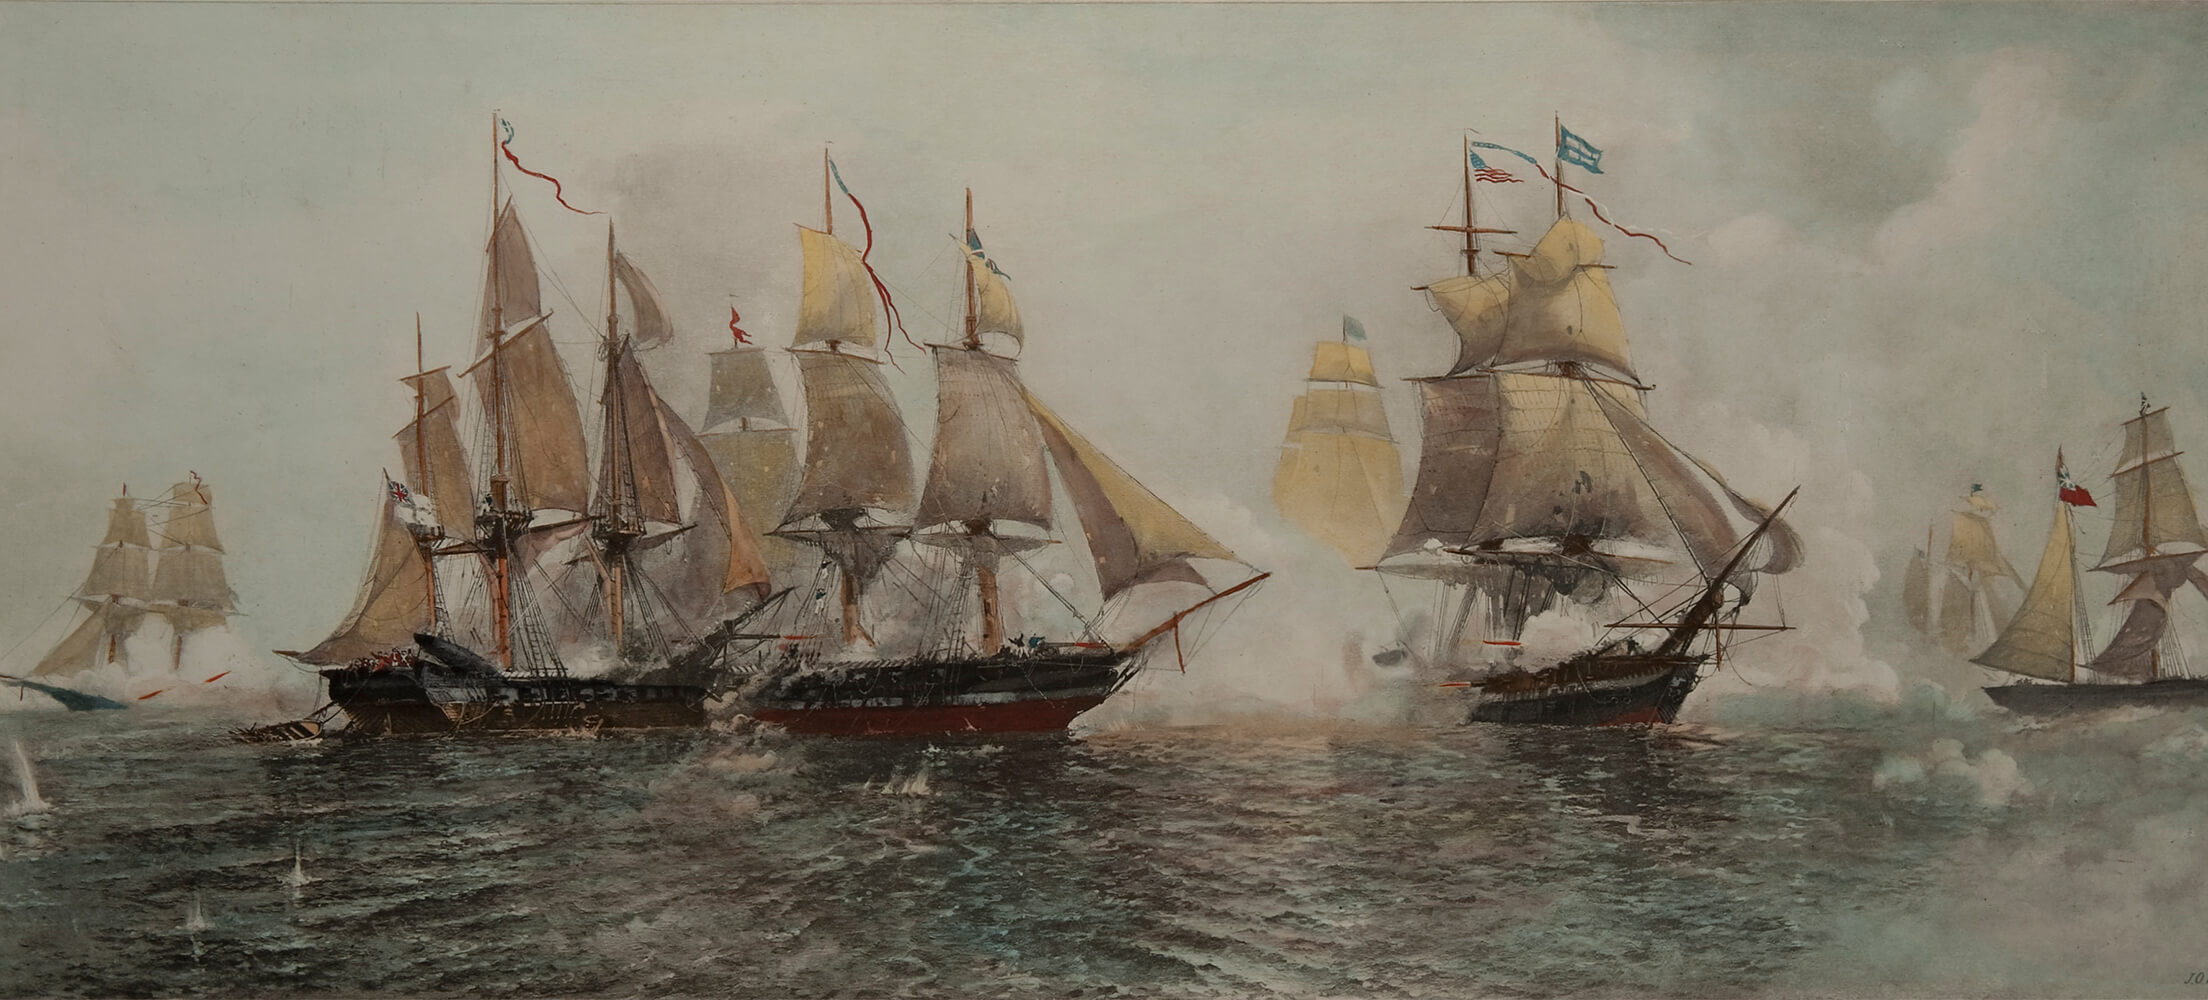 war of 1812 royal navy